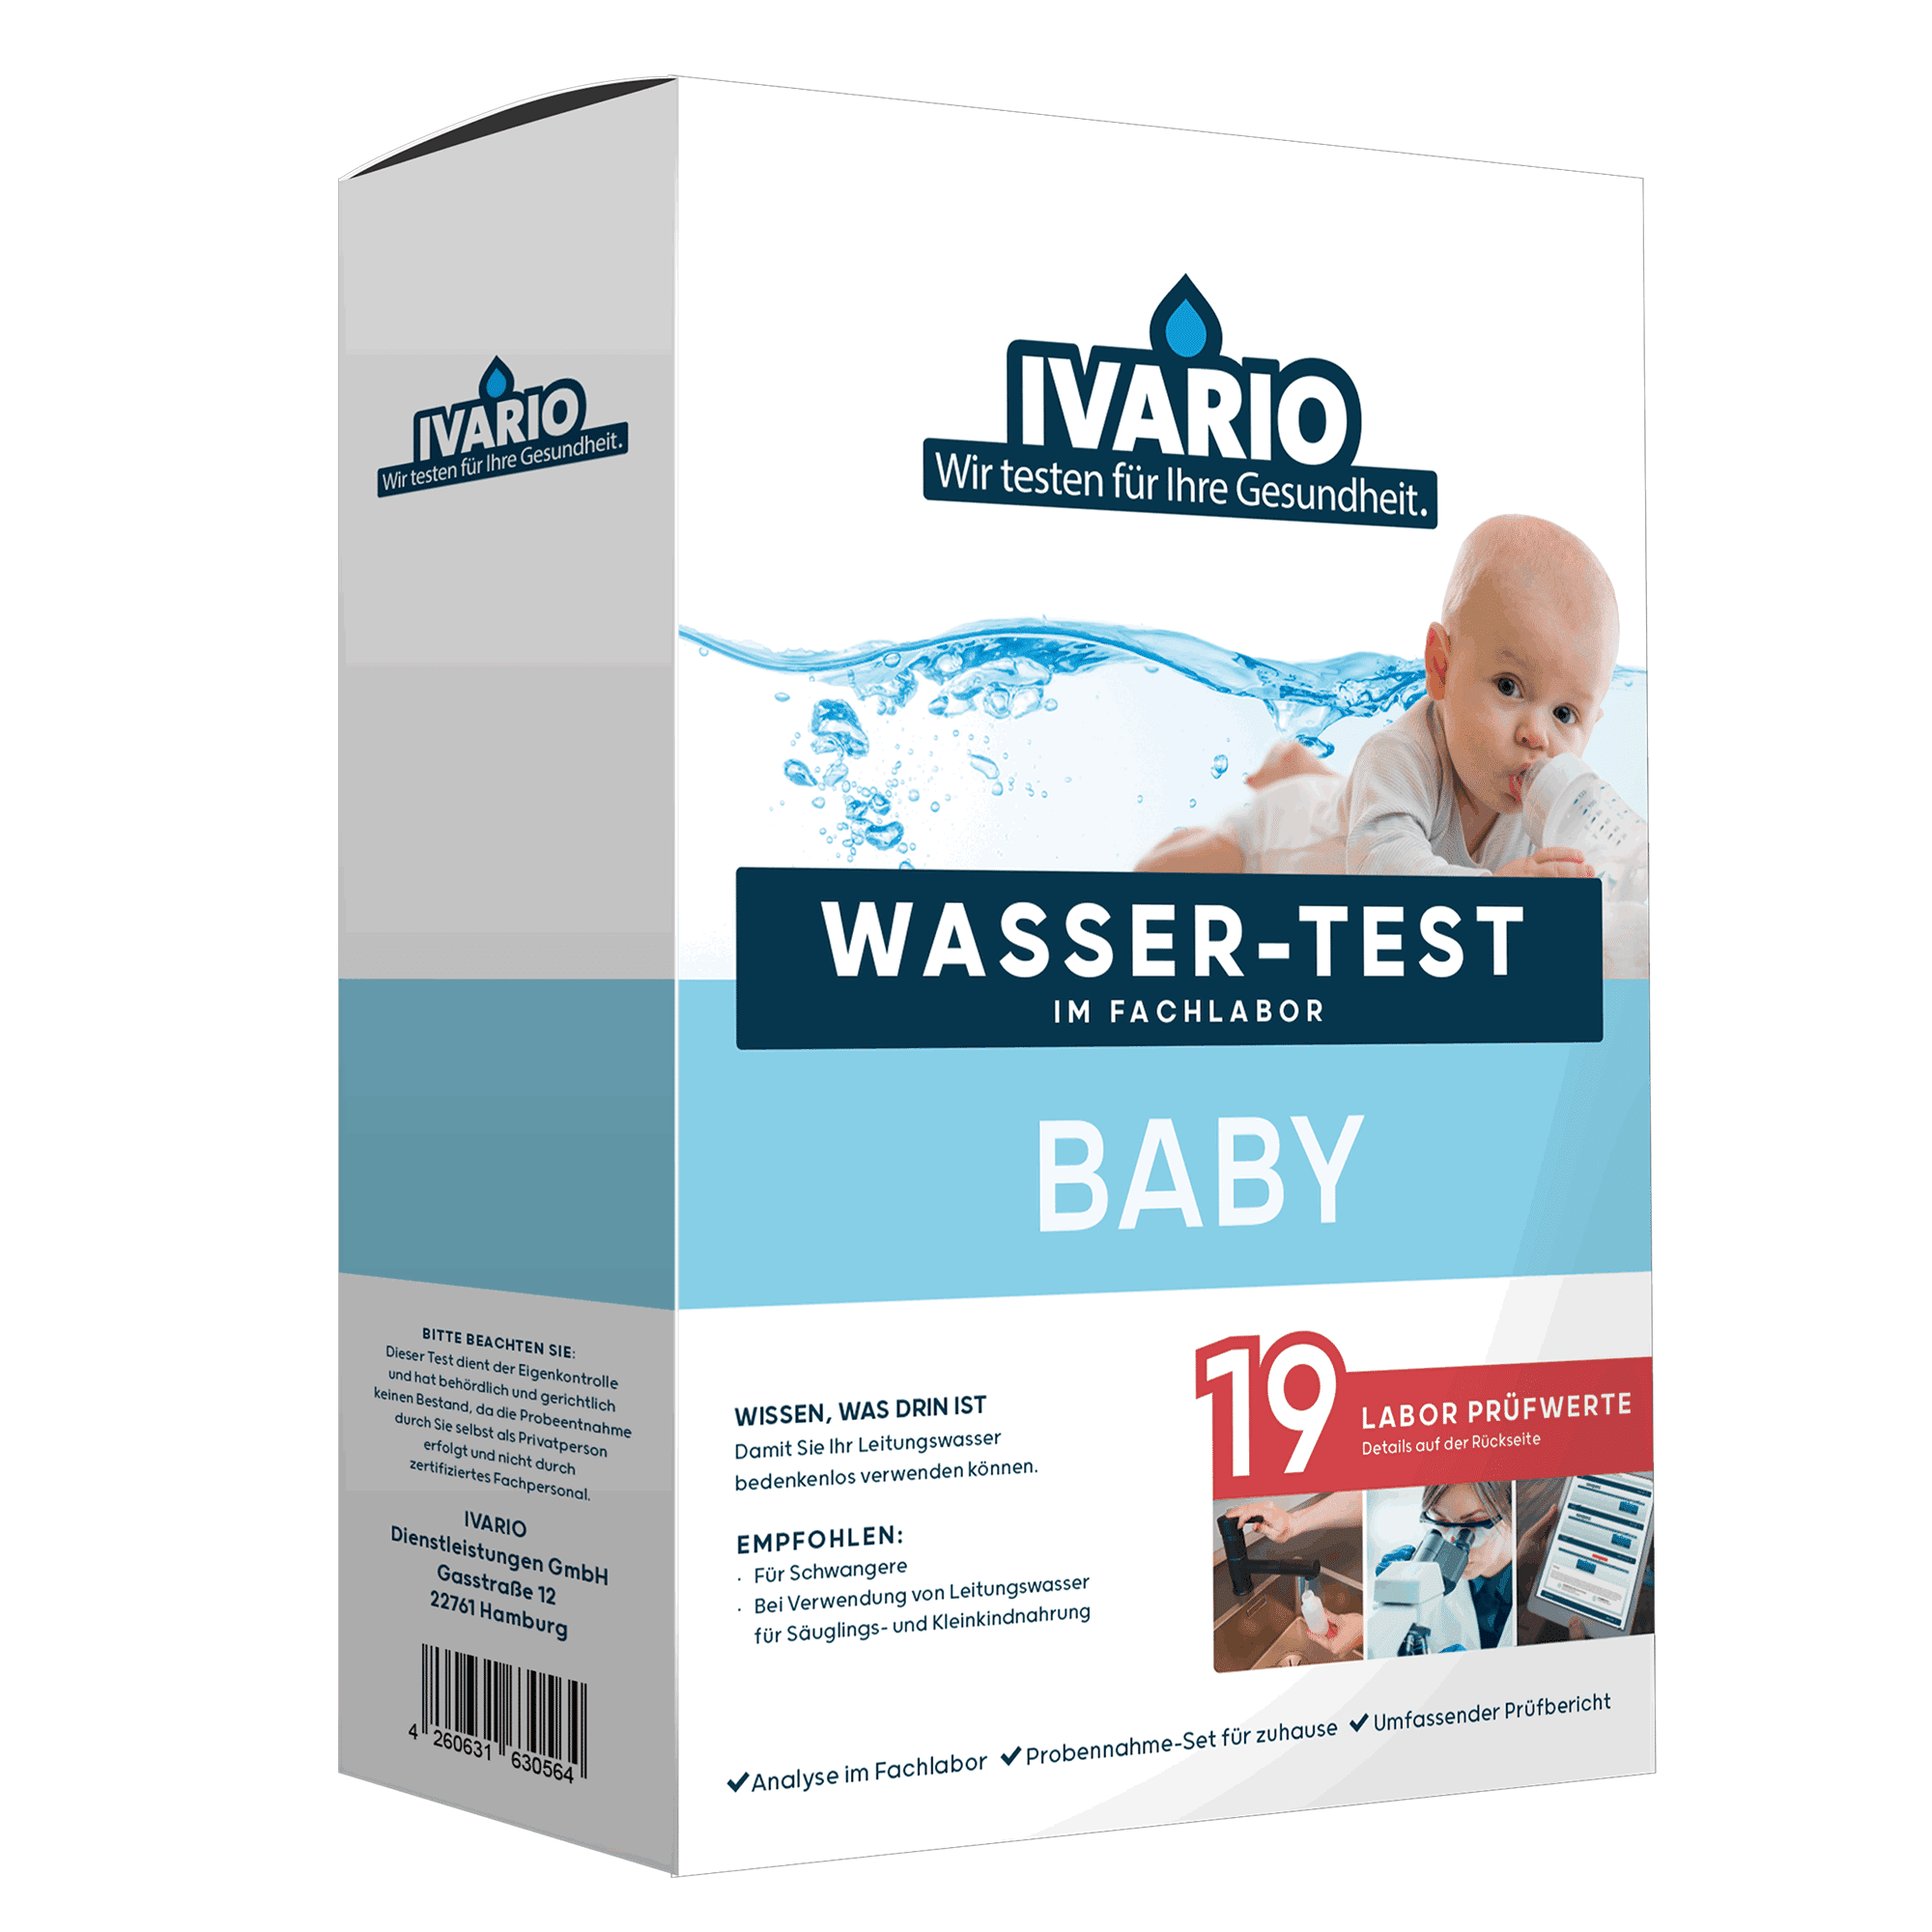 Wassertest 'Baby' 19 Prüfwerte + product video